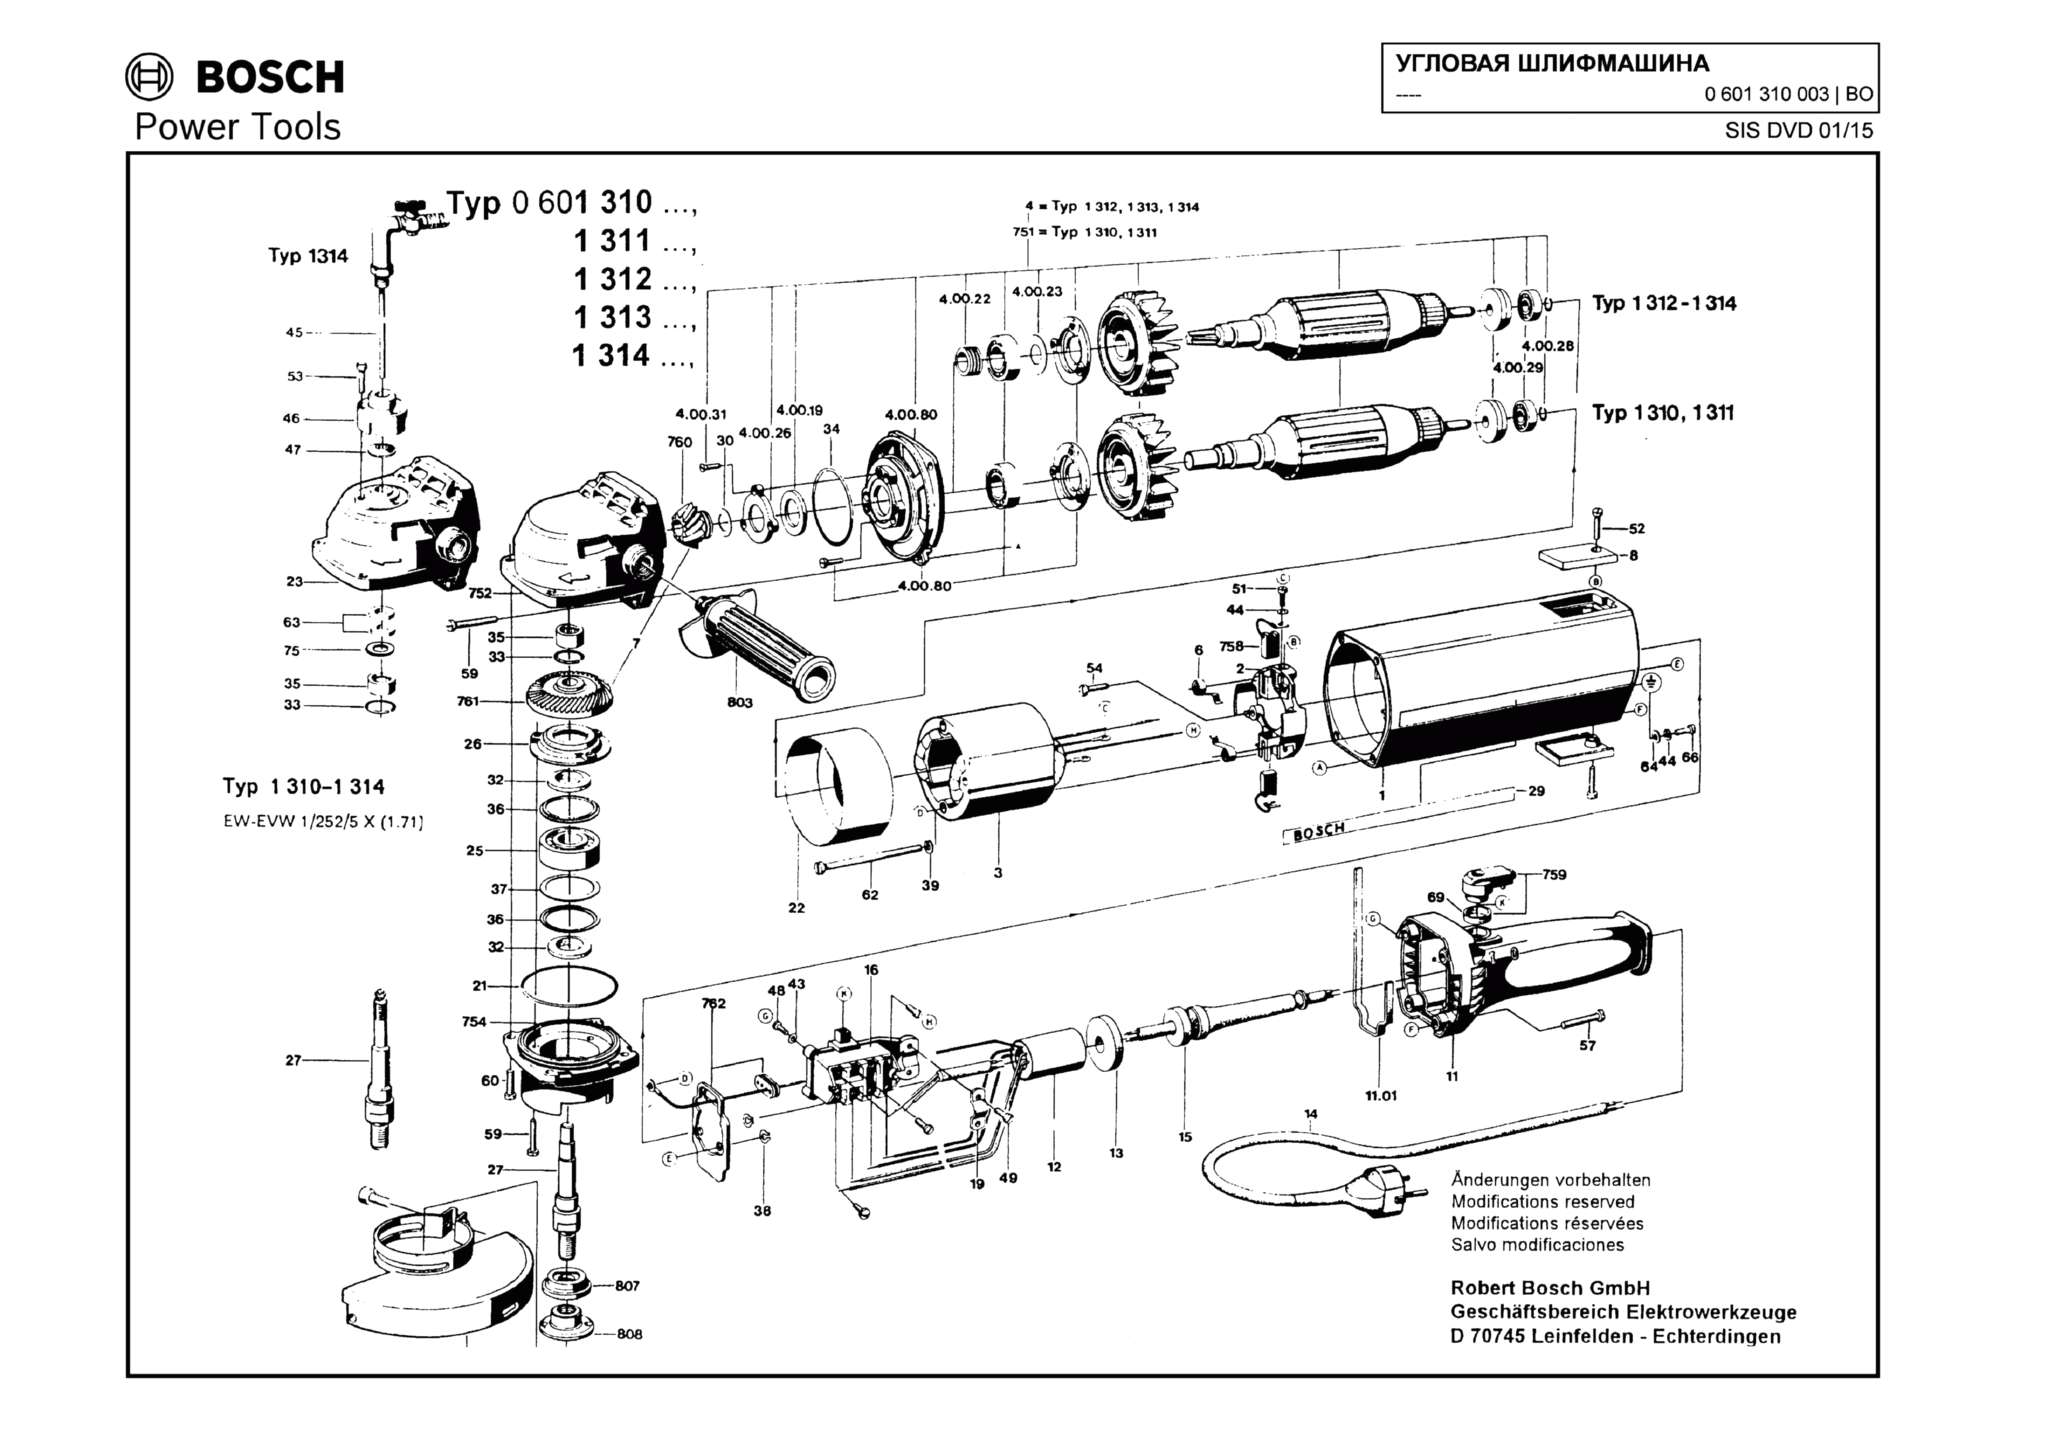 Запчасти, схема и деталировка Bosch (ТИП 0601310003)